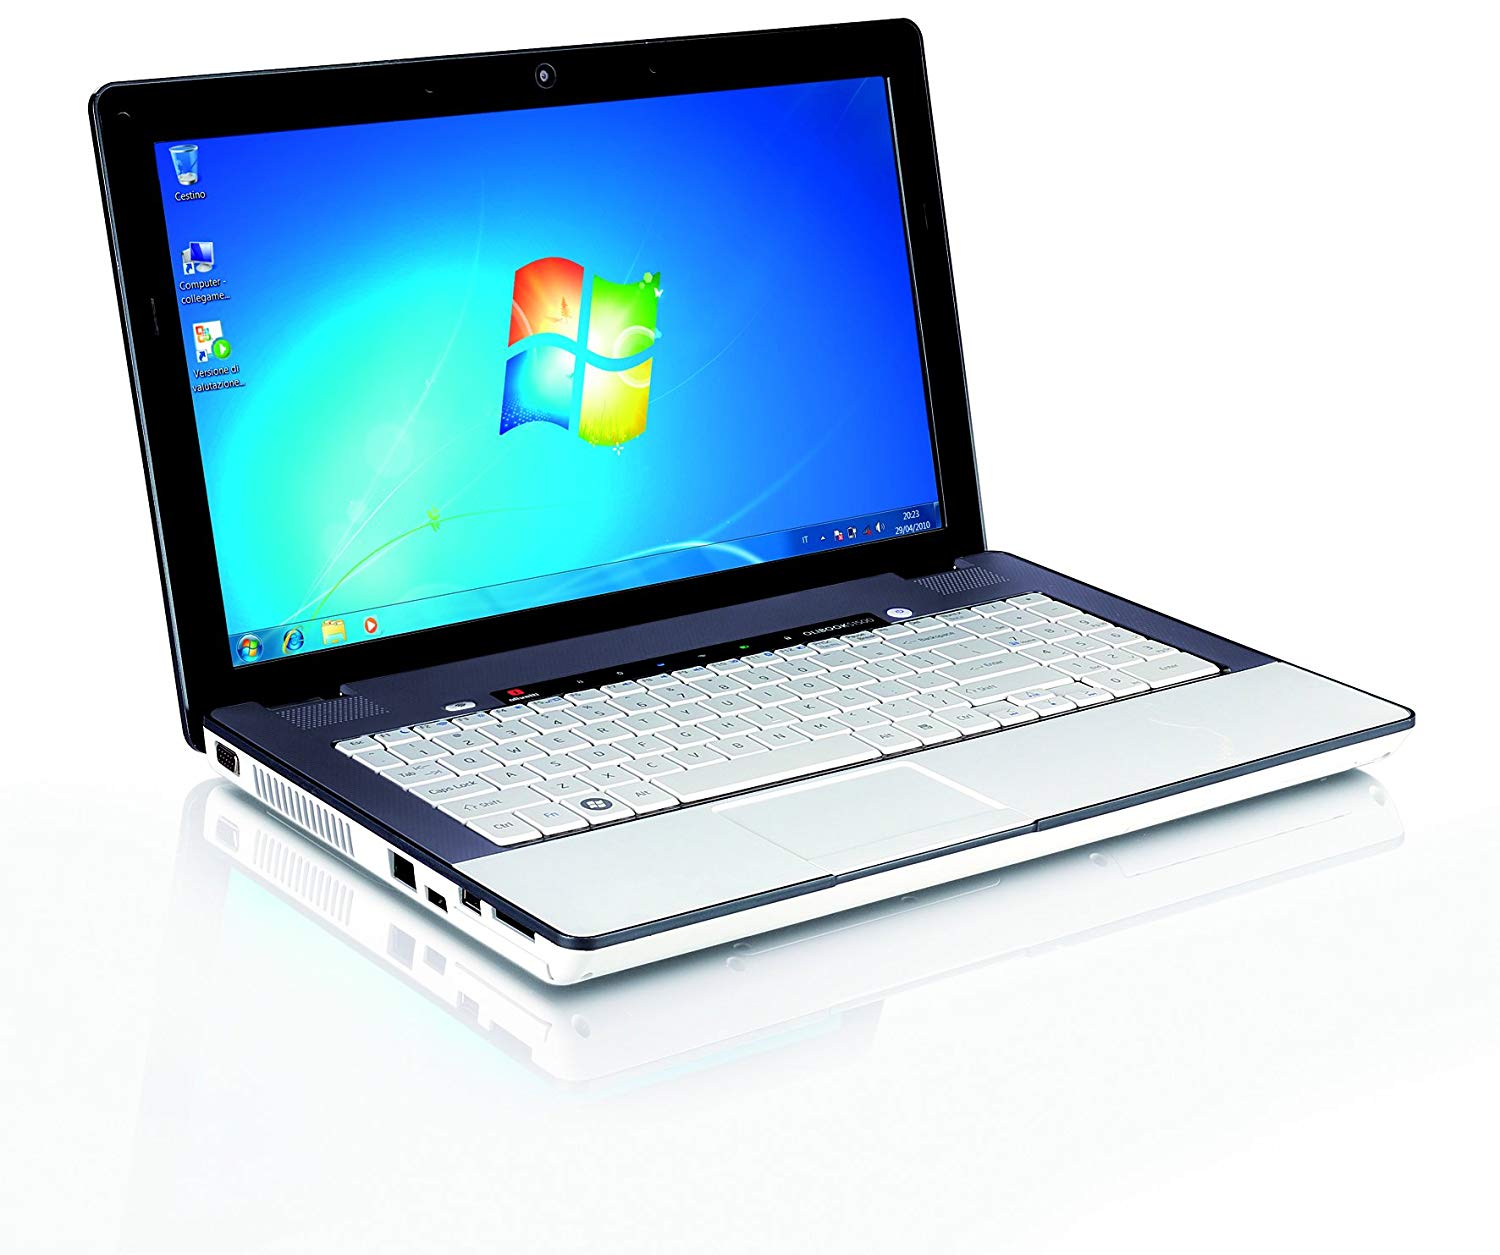 Laptop Olivetti OliBook S1500, Intel Core i3-330M 2.13GHz, 4GB DDR3, 320GB SATA, DVD-RW, 15.6 Inch, Tastatura Numerica